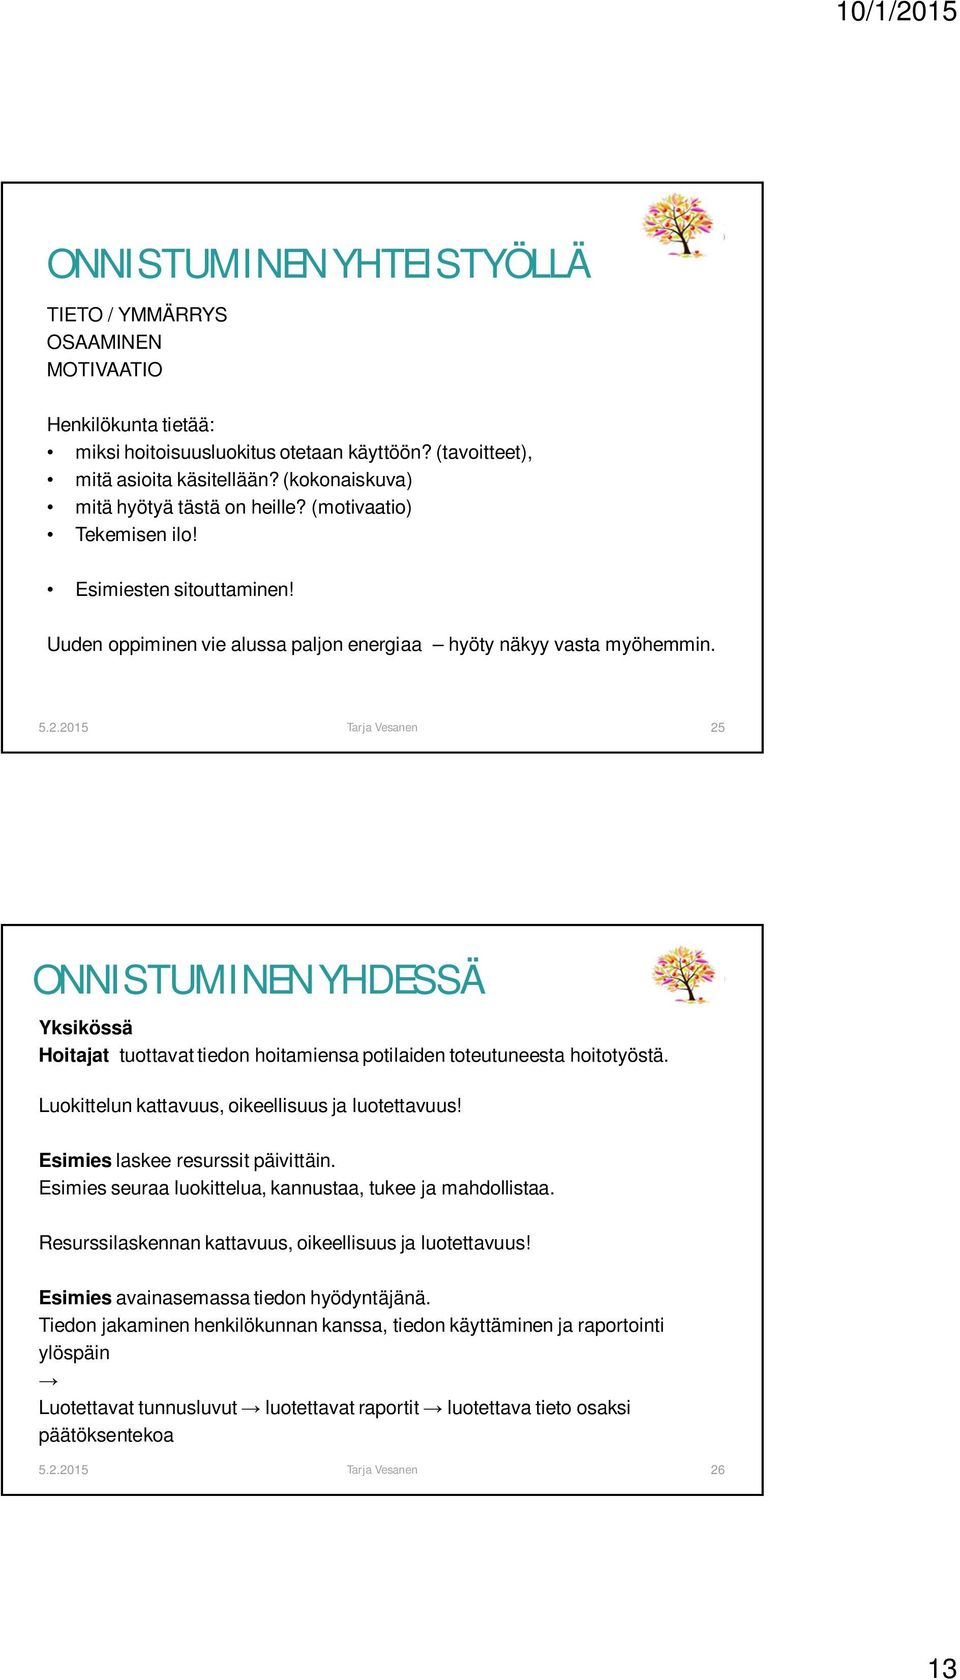 2015 Tarja Vesanen 25 ONNISTUMINEN YHDESSÄ Yksikössä Hoitajat tuottavat tiedon hoitamiensa potilaiden toteutuneesta hoitotyöstä. Luokittelun kattavuus, oikeellisuus ja luotettavuus!